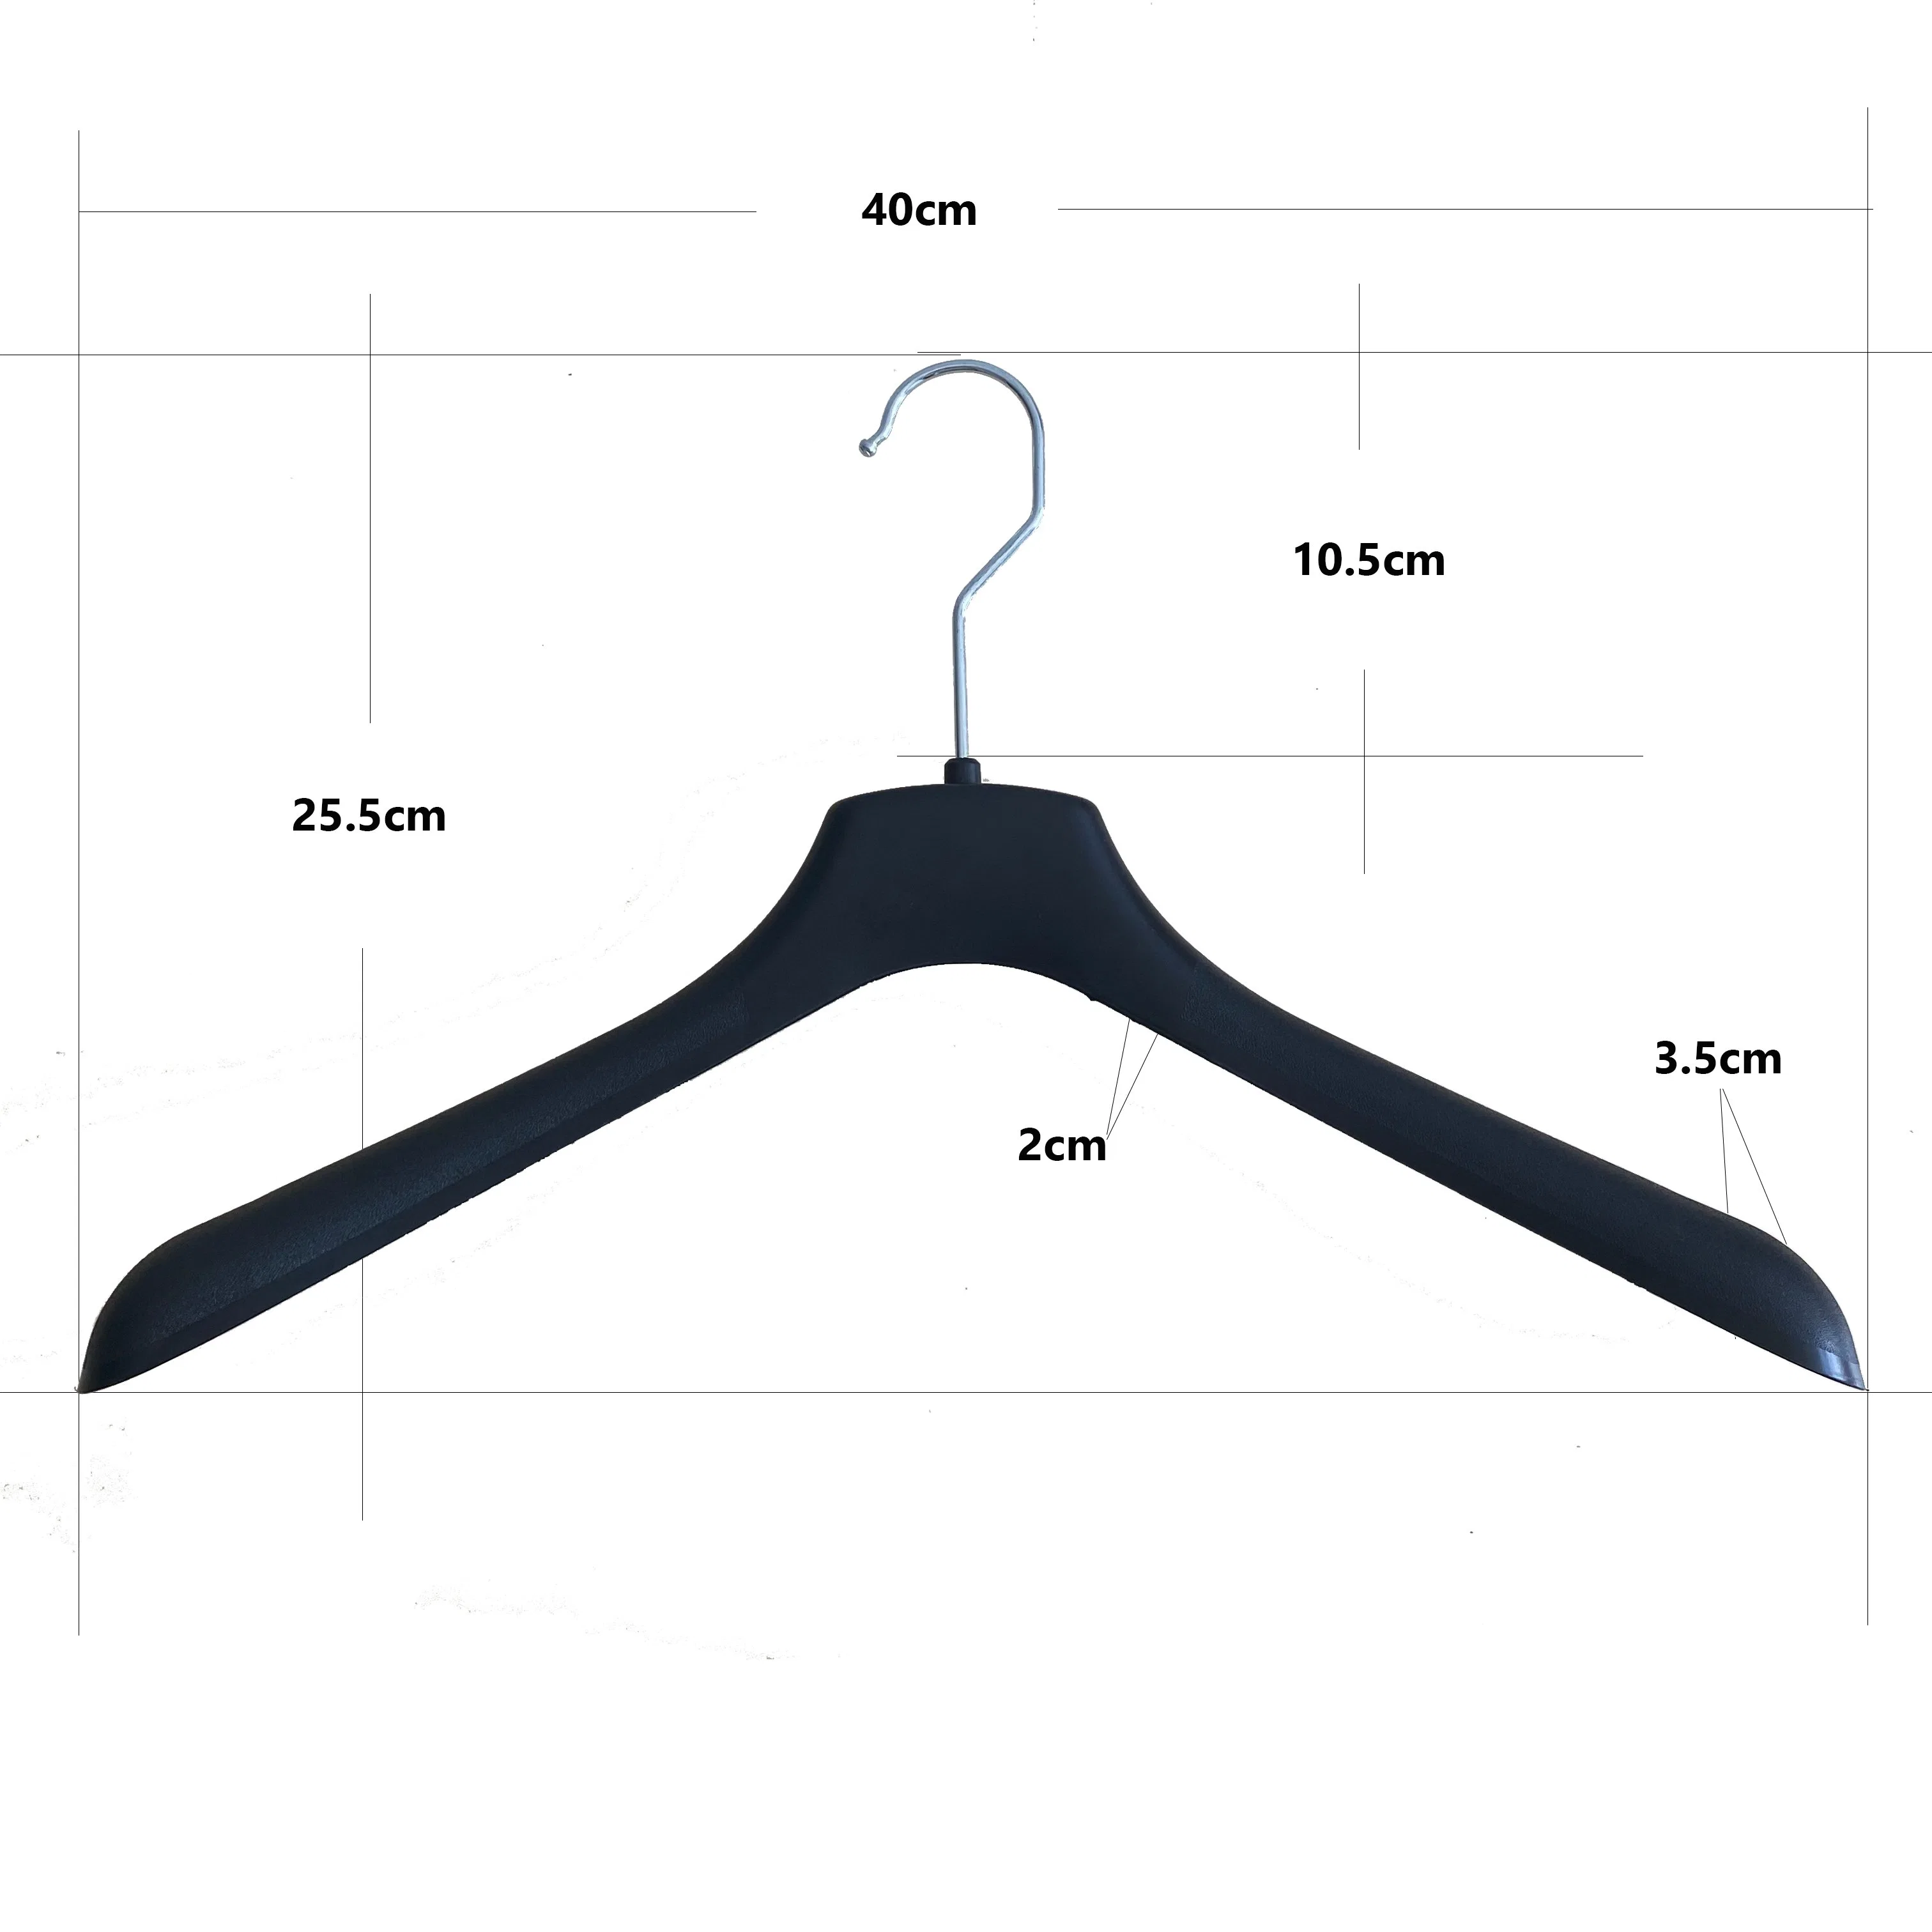 Suporte de fábrica com o gancho de metal para exibir Suit Hanger Jacket cabide (40cm)